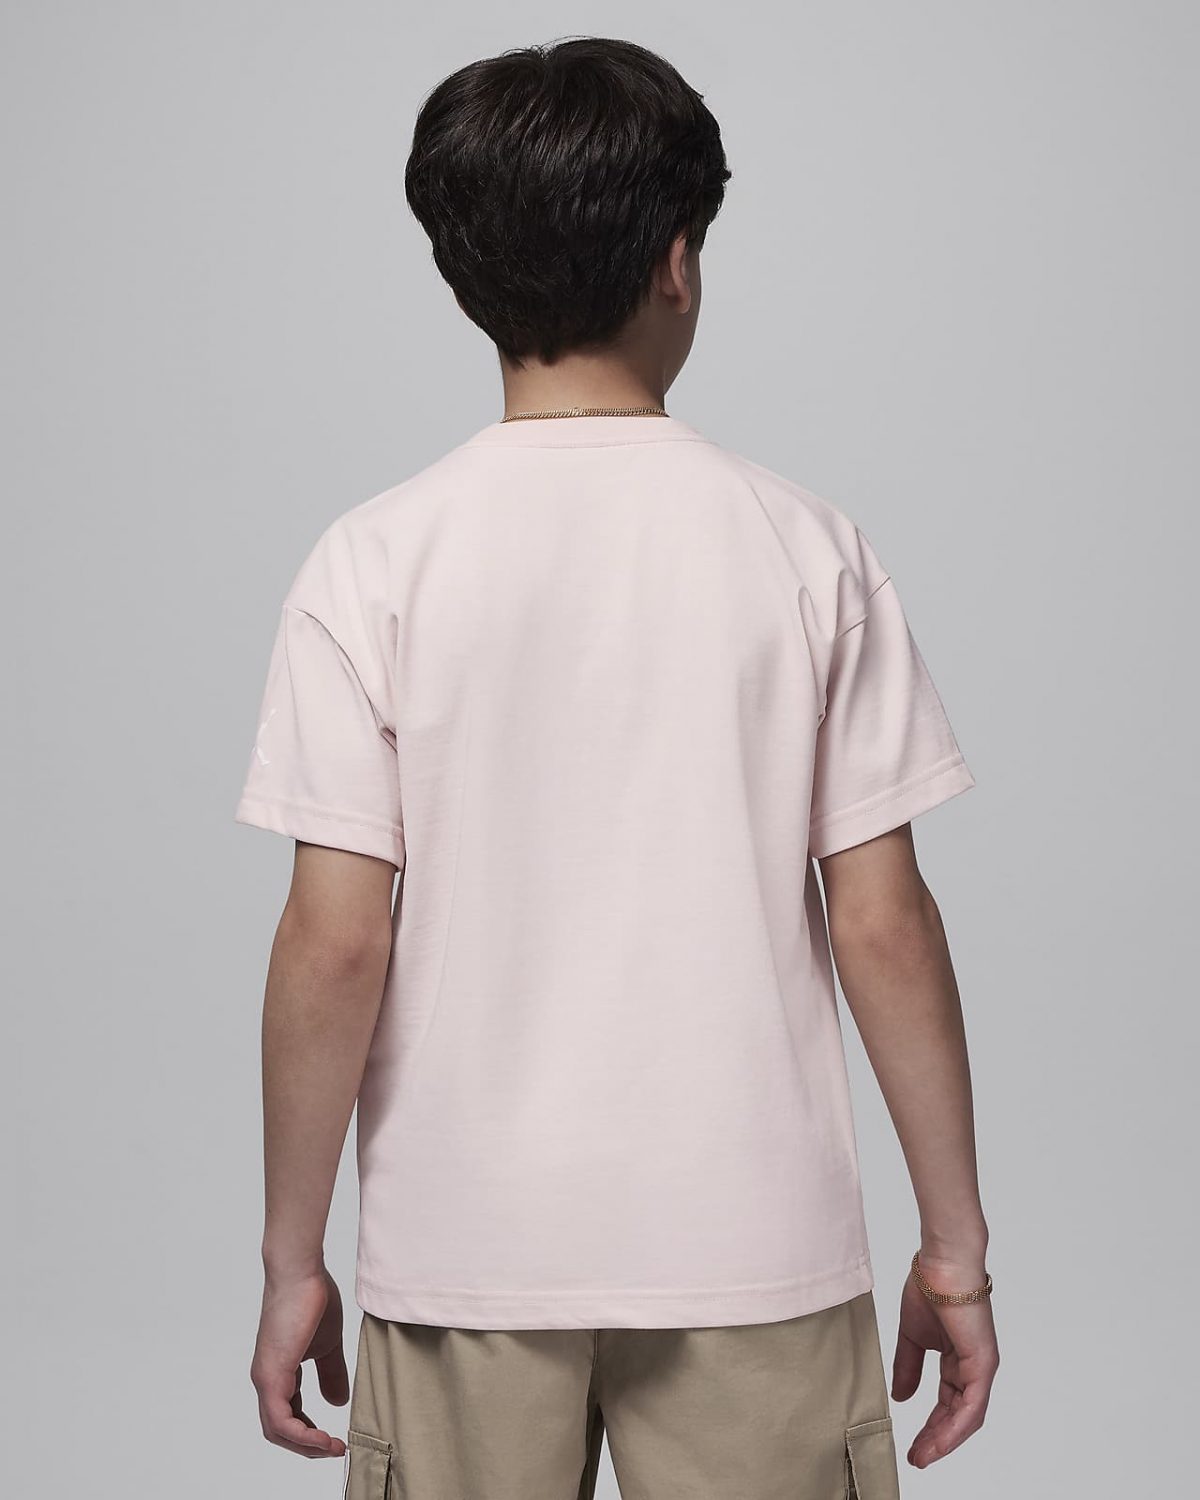 Детская футболка nike Air Jordan 1 розовая фотография